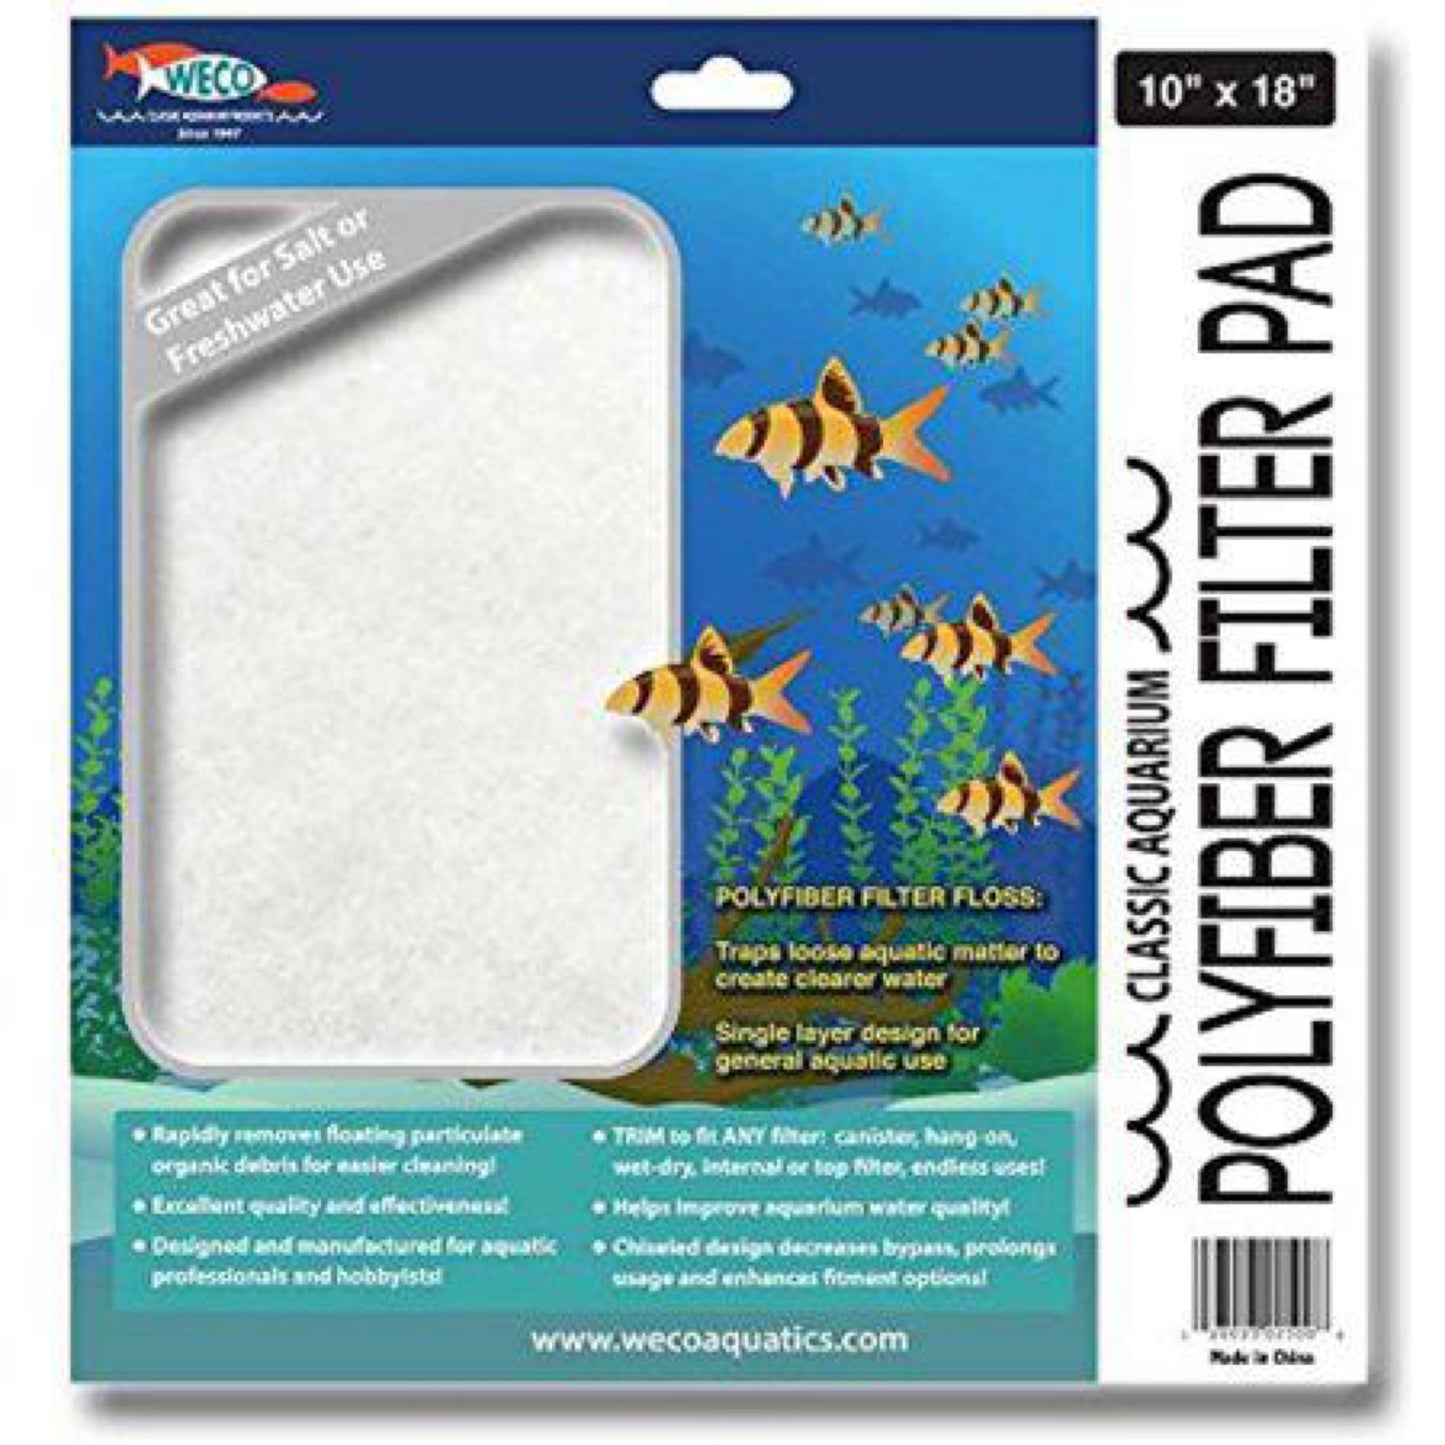 Weco 37702500: Classic Aquarium Polyfiber Filter Pad